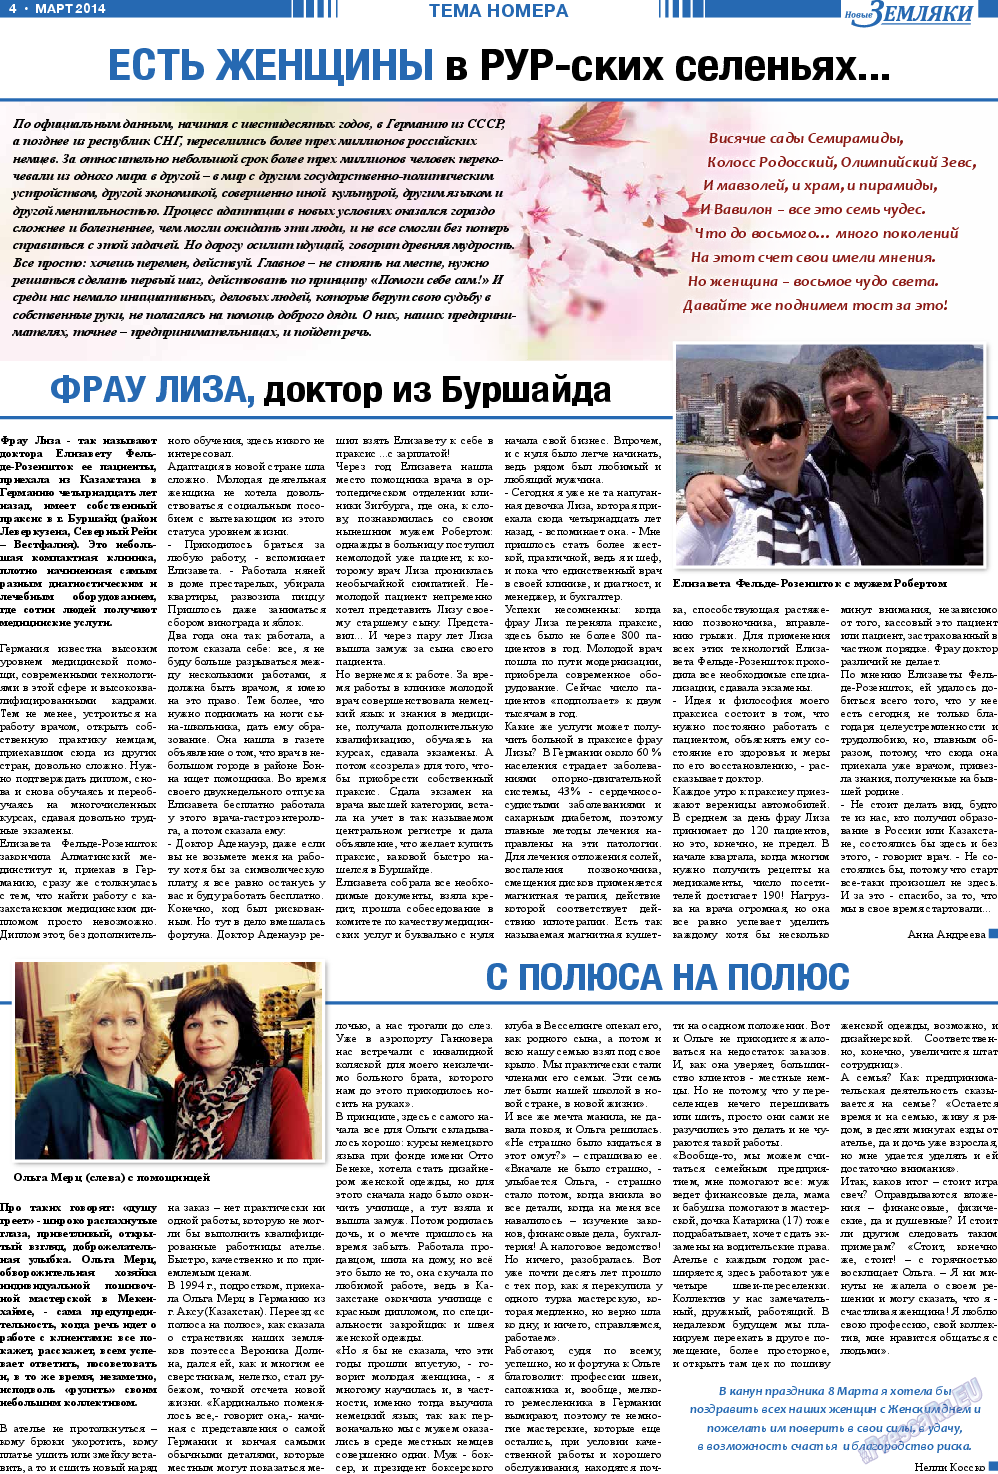 Новые Земляки, газета. 2014 №3 стр.4